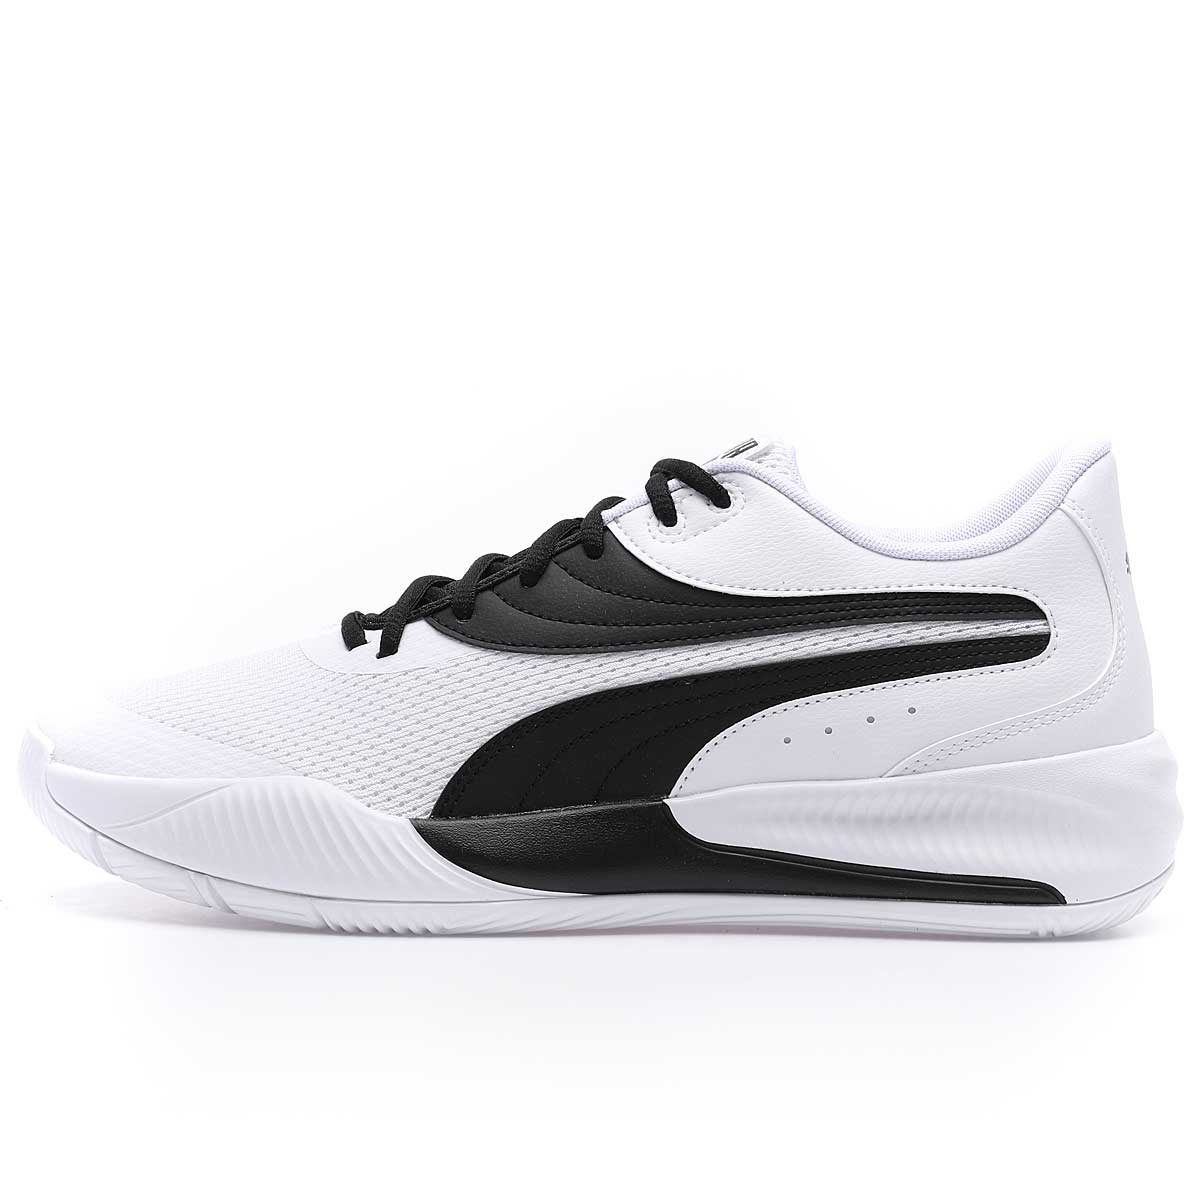 🏀 Get the TRIPLE basketball shoe - black/white | KICKZ